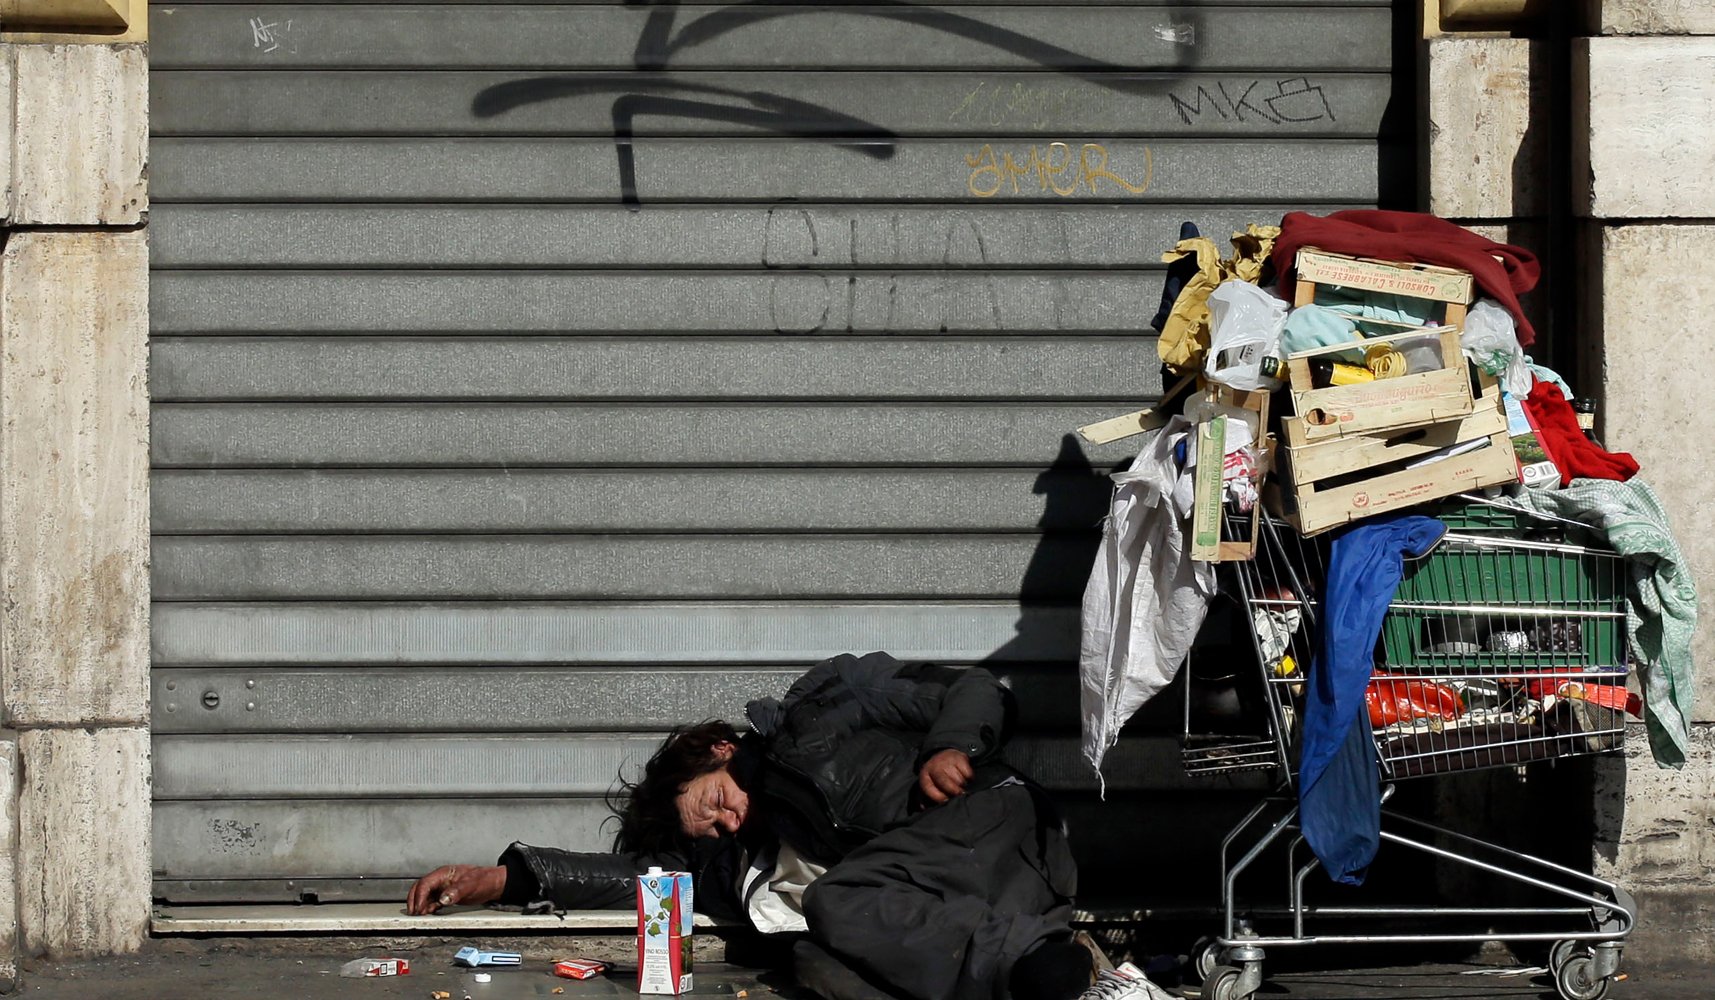 20 χρόνια ΚΕΘΕΑ ΕΞΕΛΙΞΙΣ: Αύξηση των άστεγων και περιθωριοποιημένων χρηστών. Το ΚΕΘΕΑ αναζητά πόρους για ξενώνες